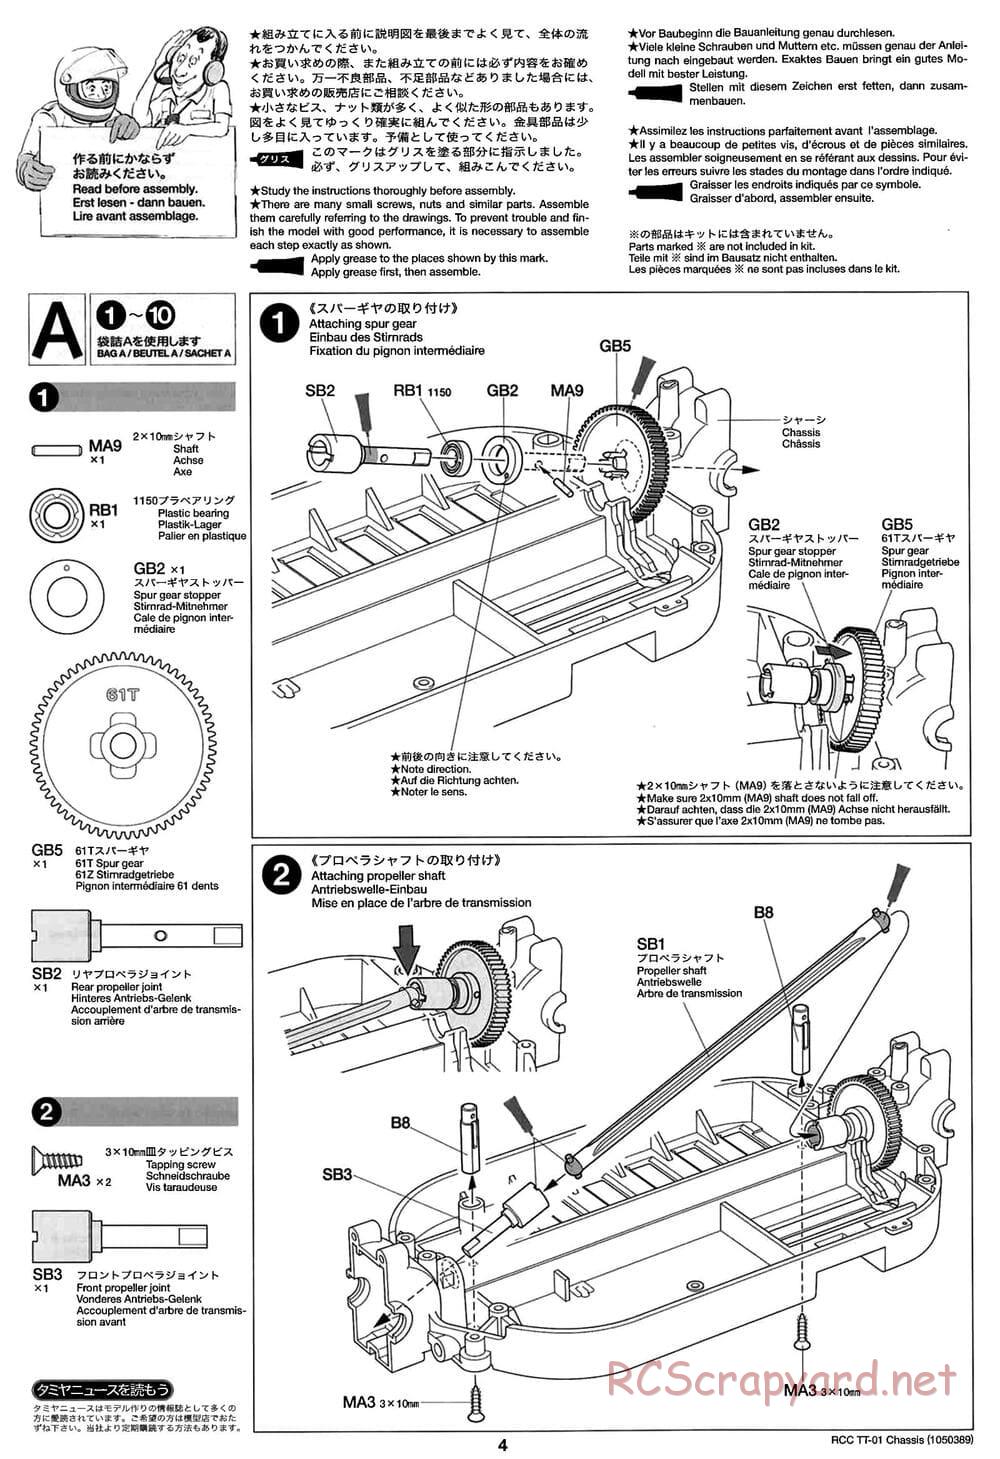 Tamiya - TT-01 Chassis - Manual - Page 4